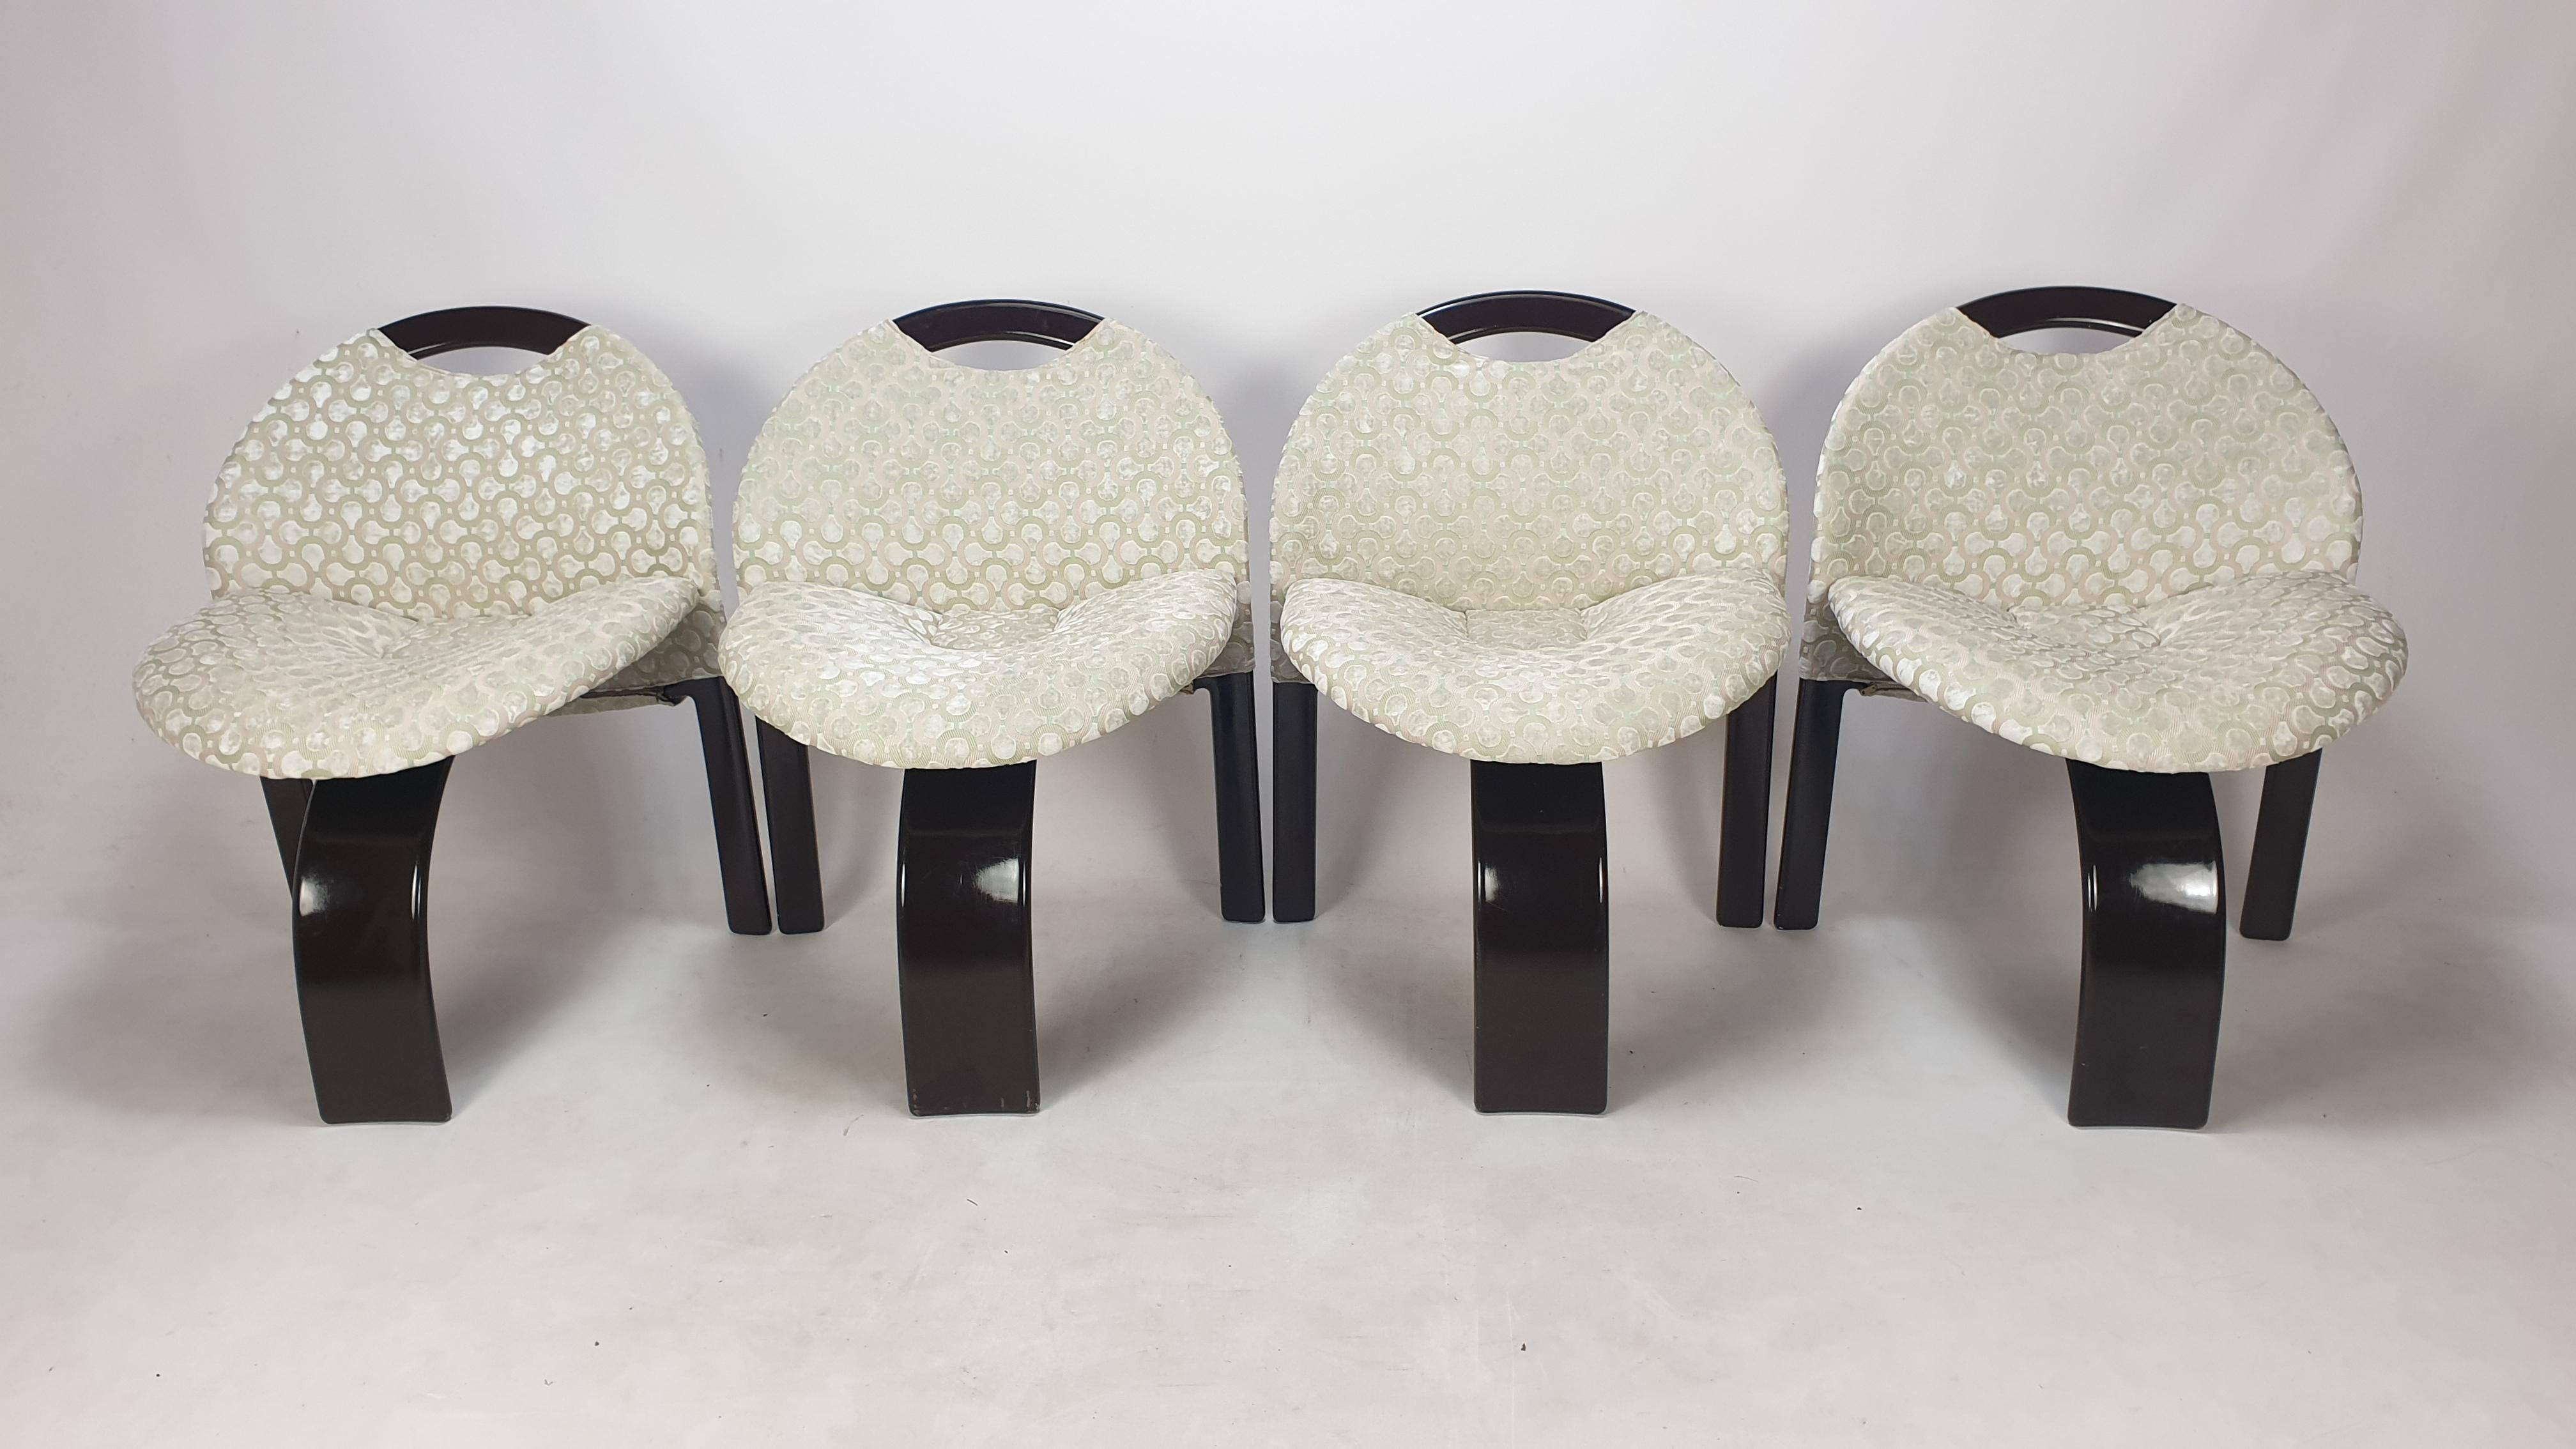 Sehr schöner Satz von 4 'Sail' Stühlen, entworfen von Giovanni Offredi und hergestellt von Saporiti, Italien 1973. 

Diese bequemen Stühle wurden gerade mit neuem Stoff restauriert und befinden sich in perfektem Zustand.
Sie sind mit dem